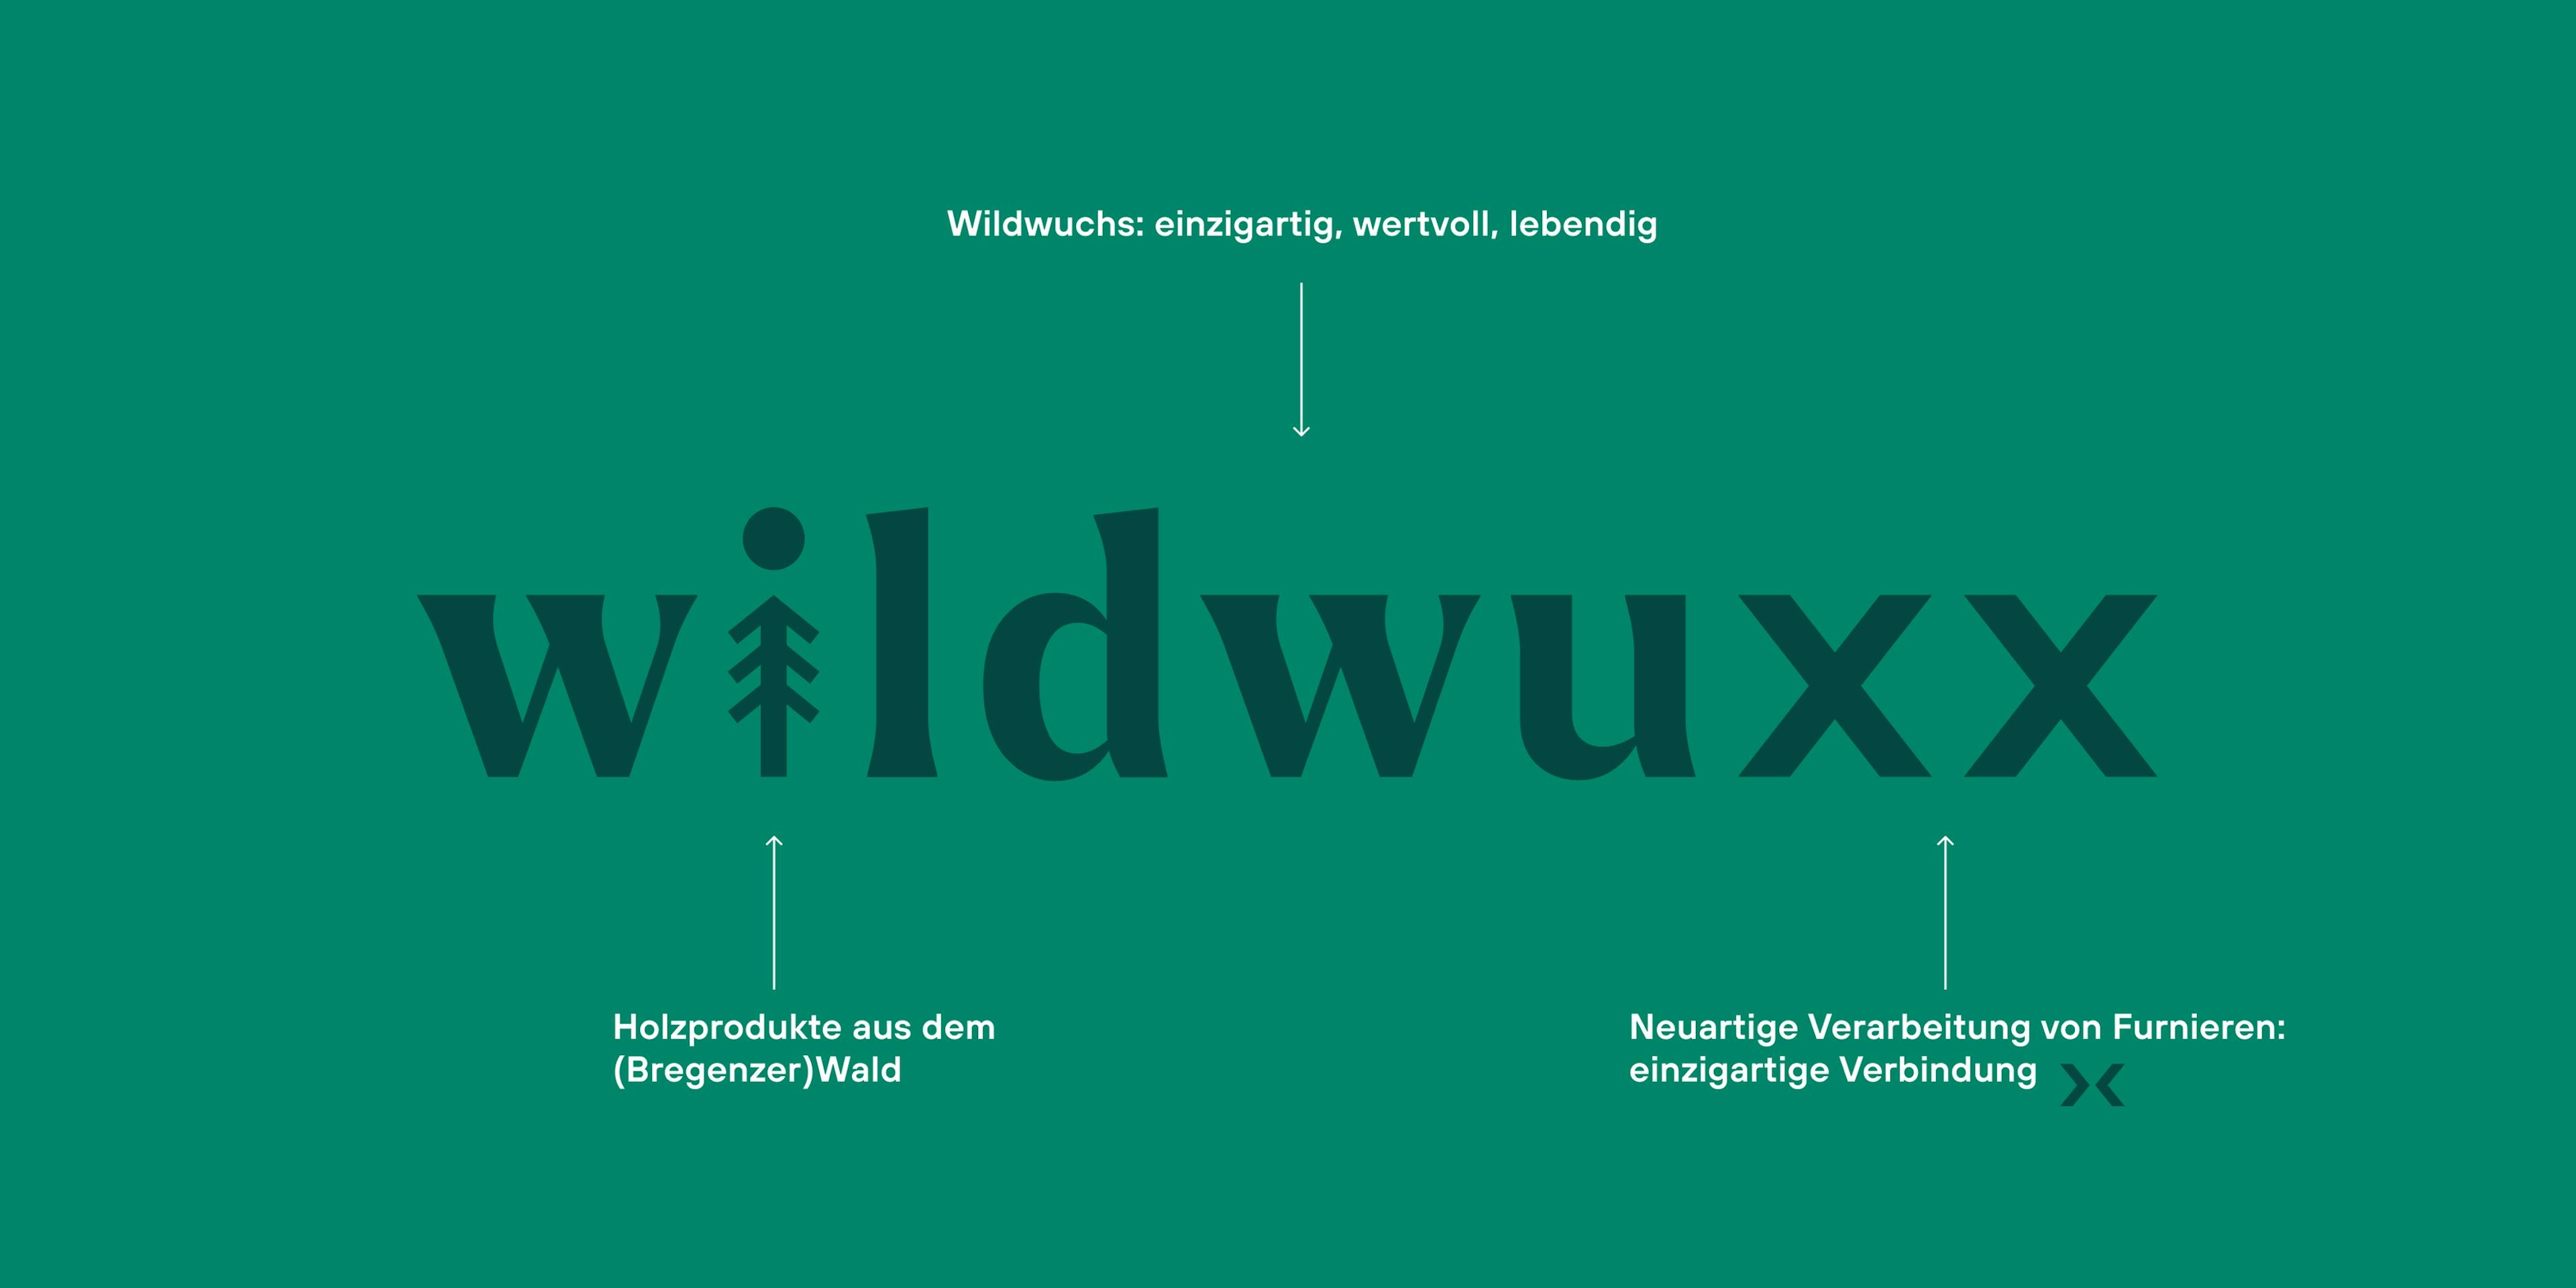 wildwuxx Logo auf grünem Hintergrund mit Beschreibungen zur Herleitung © good matters